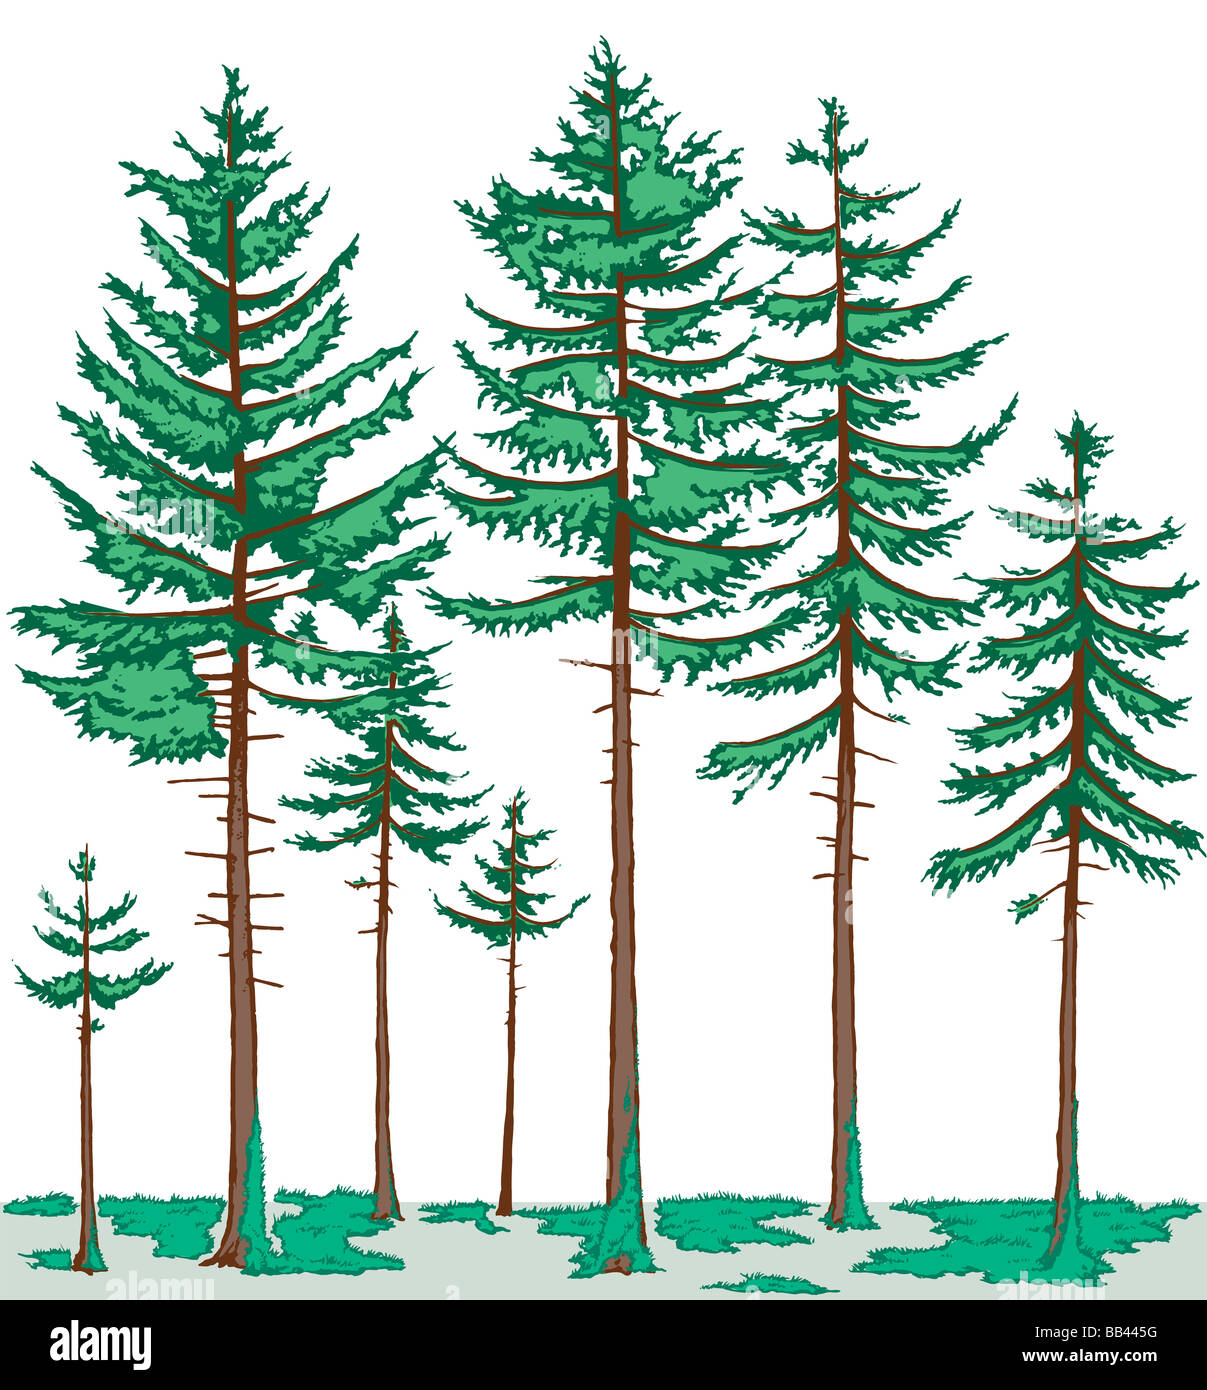 Profil de la végétation d'une forêt boréale. La strate arborescente est constitué principalement de conifères, et les mousses sont le principal la couverture du sol. Banque D'Images